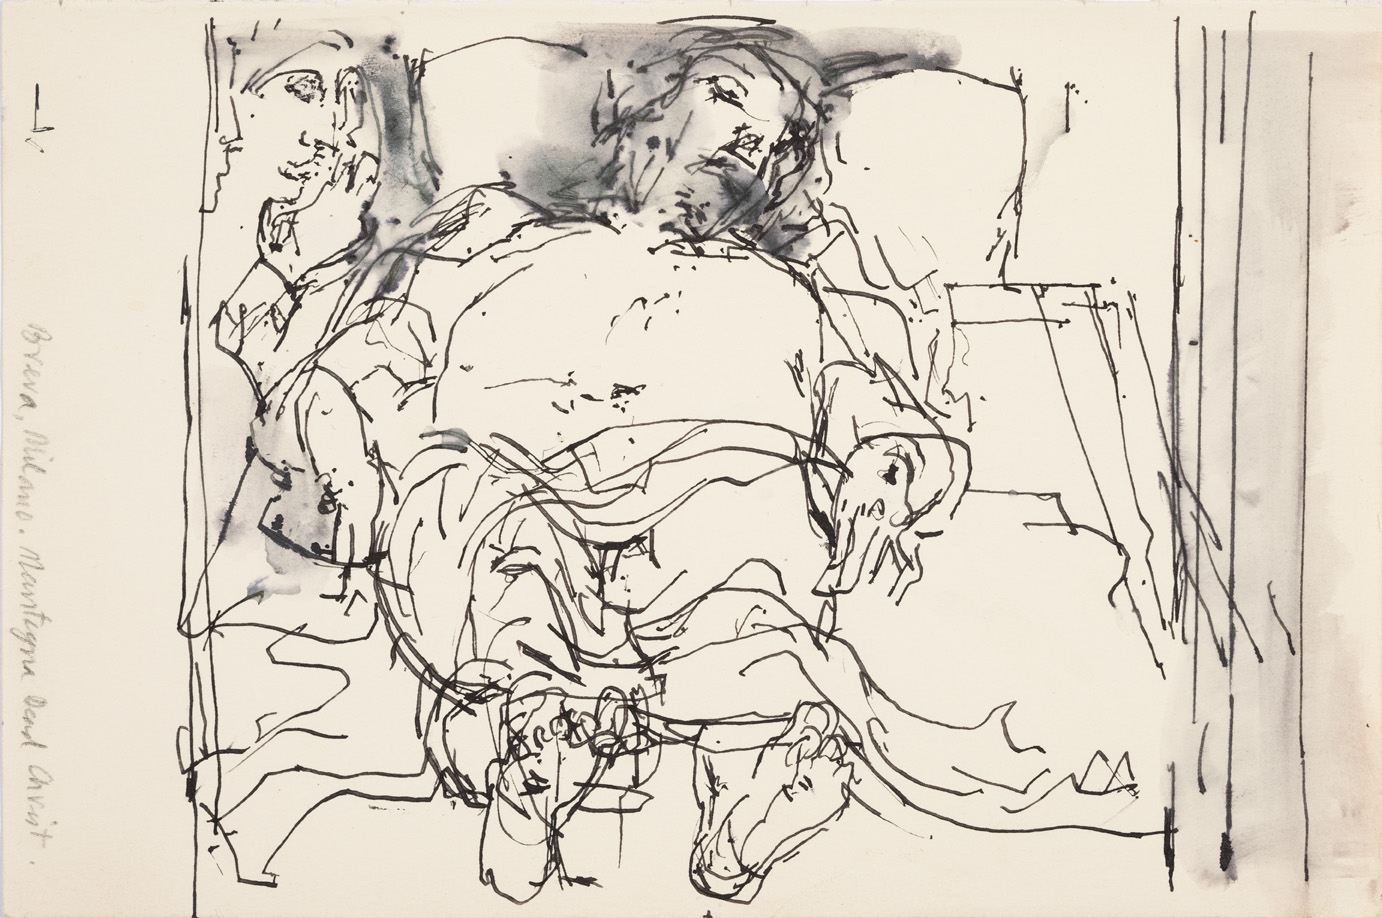 Dibuix a la tinta de John Berger inspirat en "El Crist" d’Andrea Mantegna, 2000-2010 © Beverly’s Collection